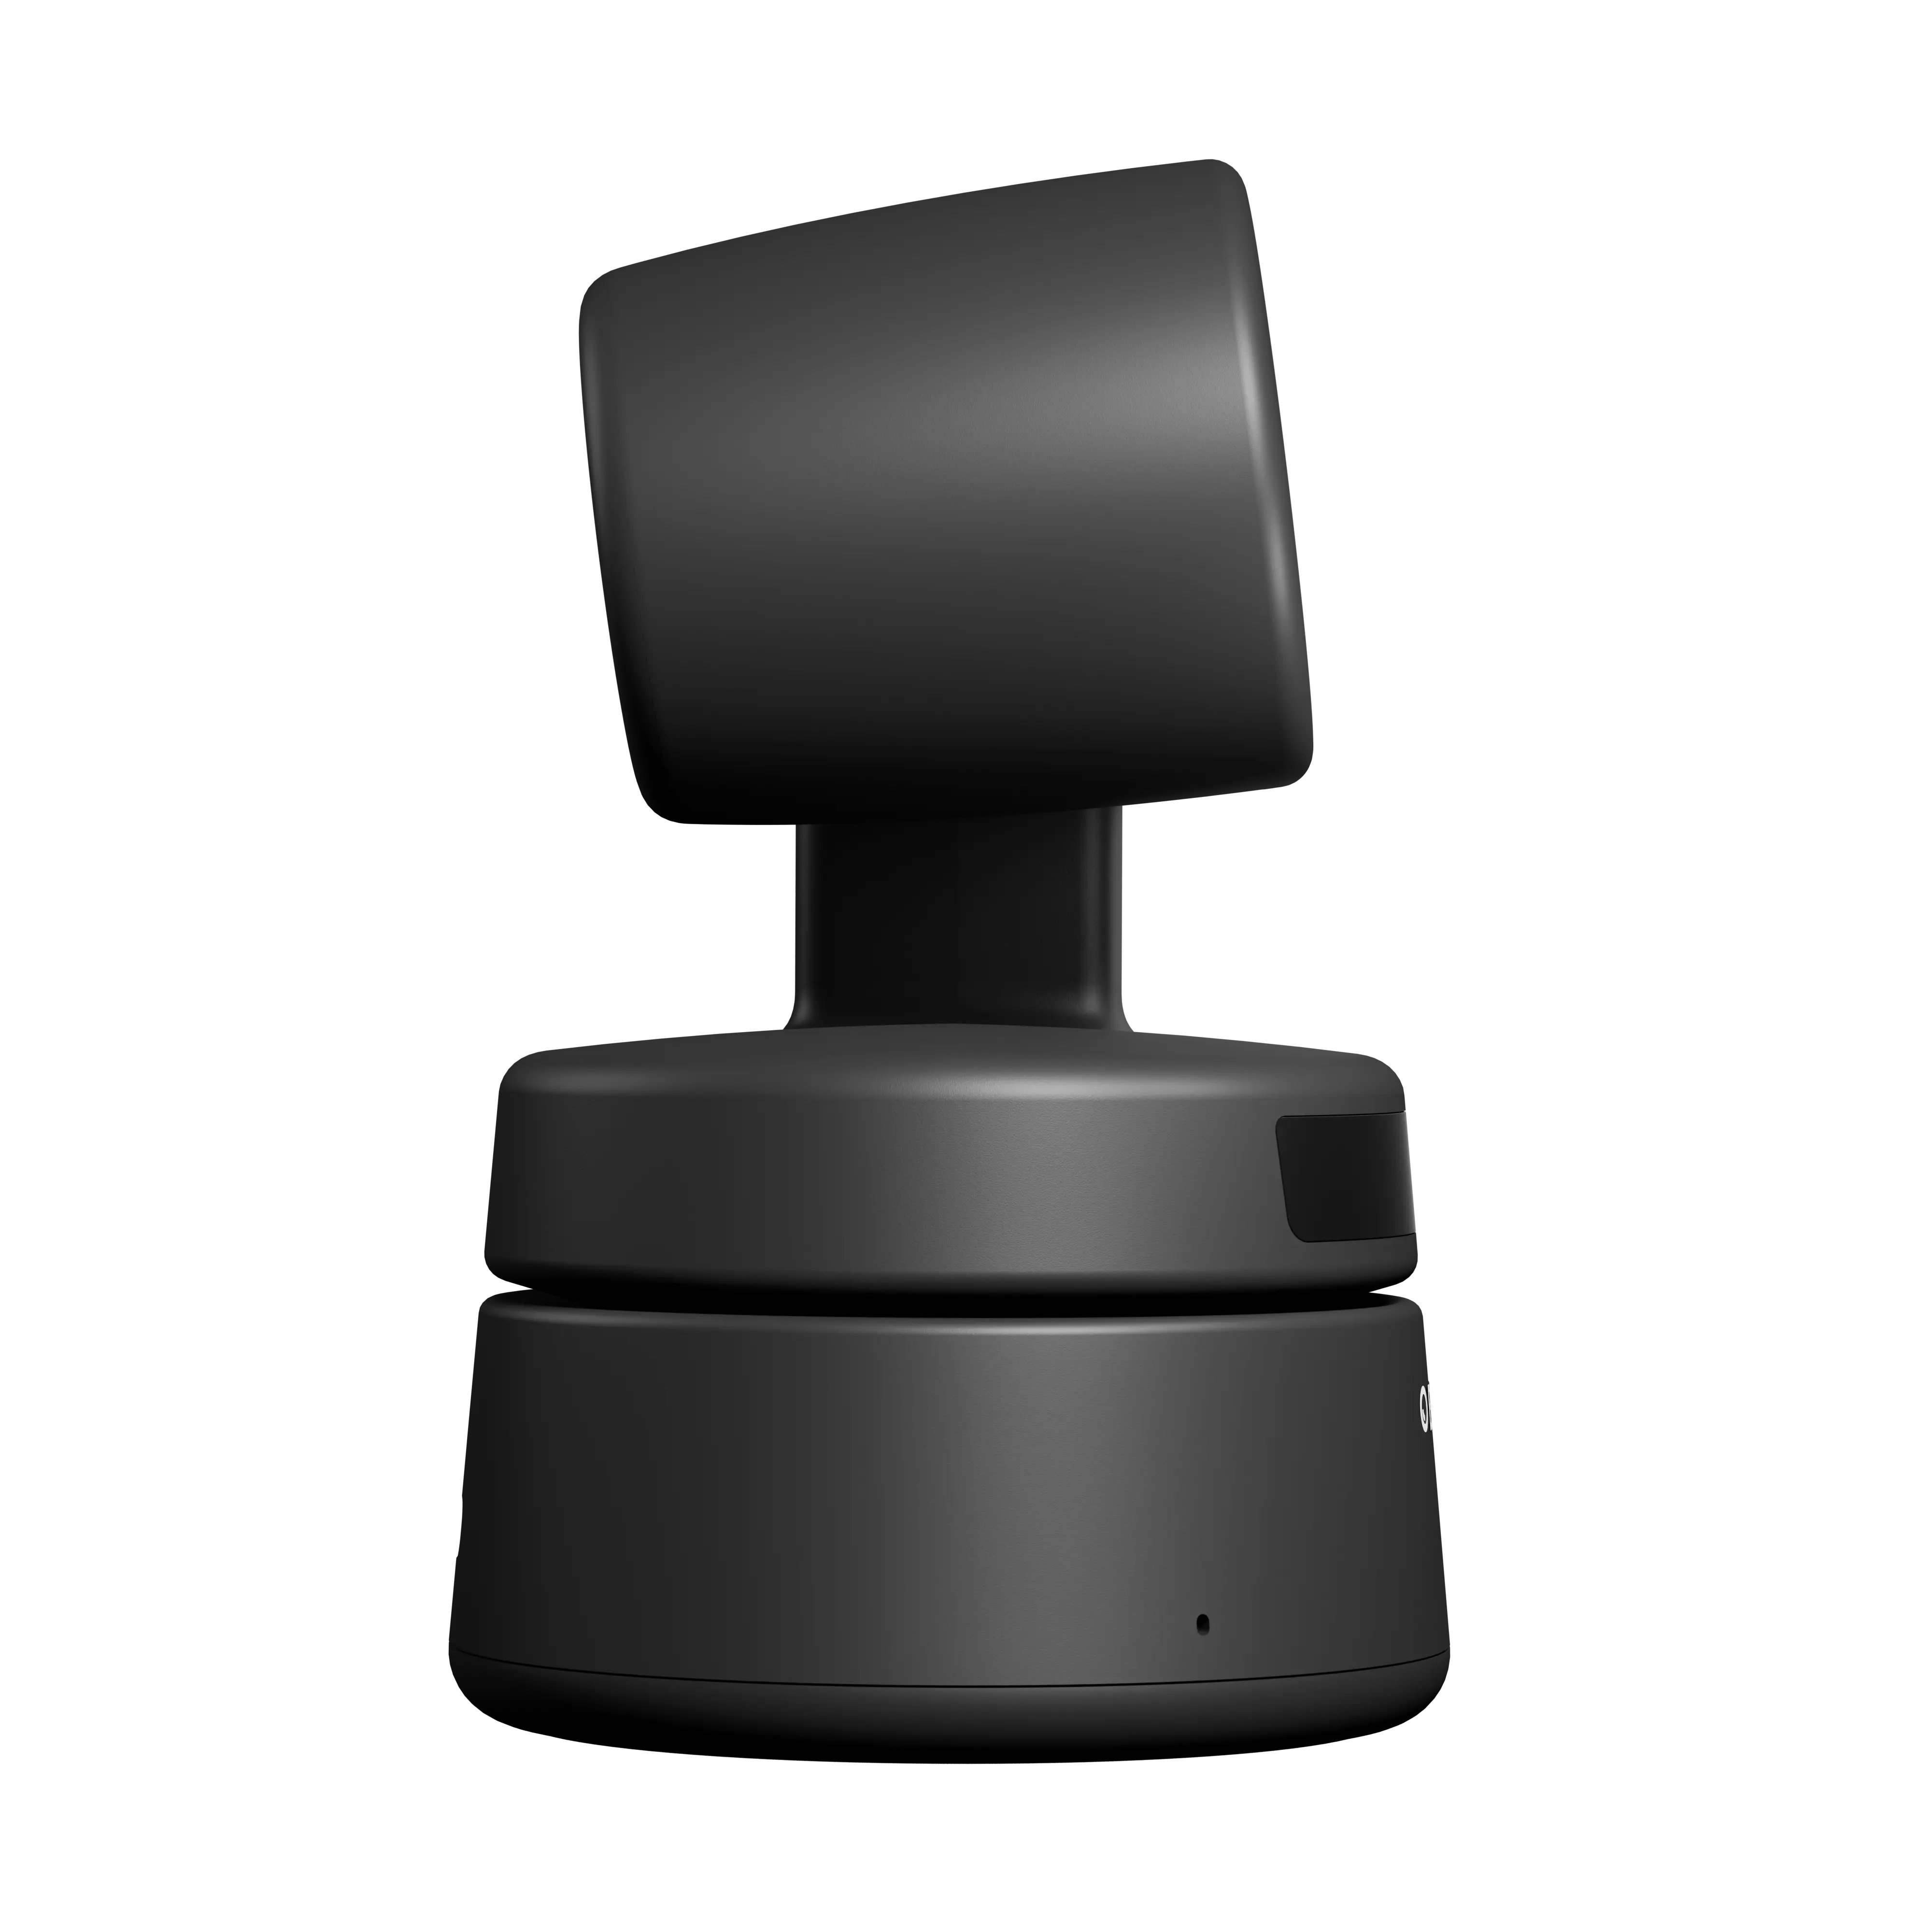 คุณภาพสูงObsbot Tiny 4K Aiขับเคลื่อนเว็บแคมPTz 1080P Full HDการประชุมทางวิดีโอแชทออนไลน์การประชุมสดStremsing